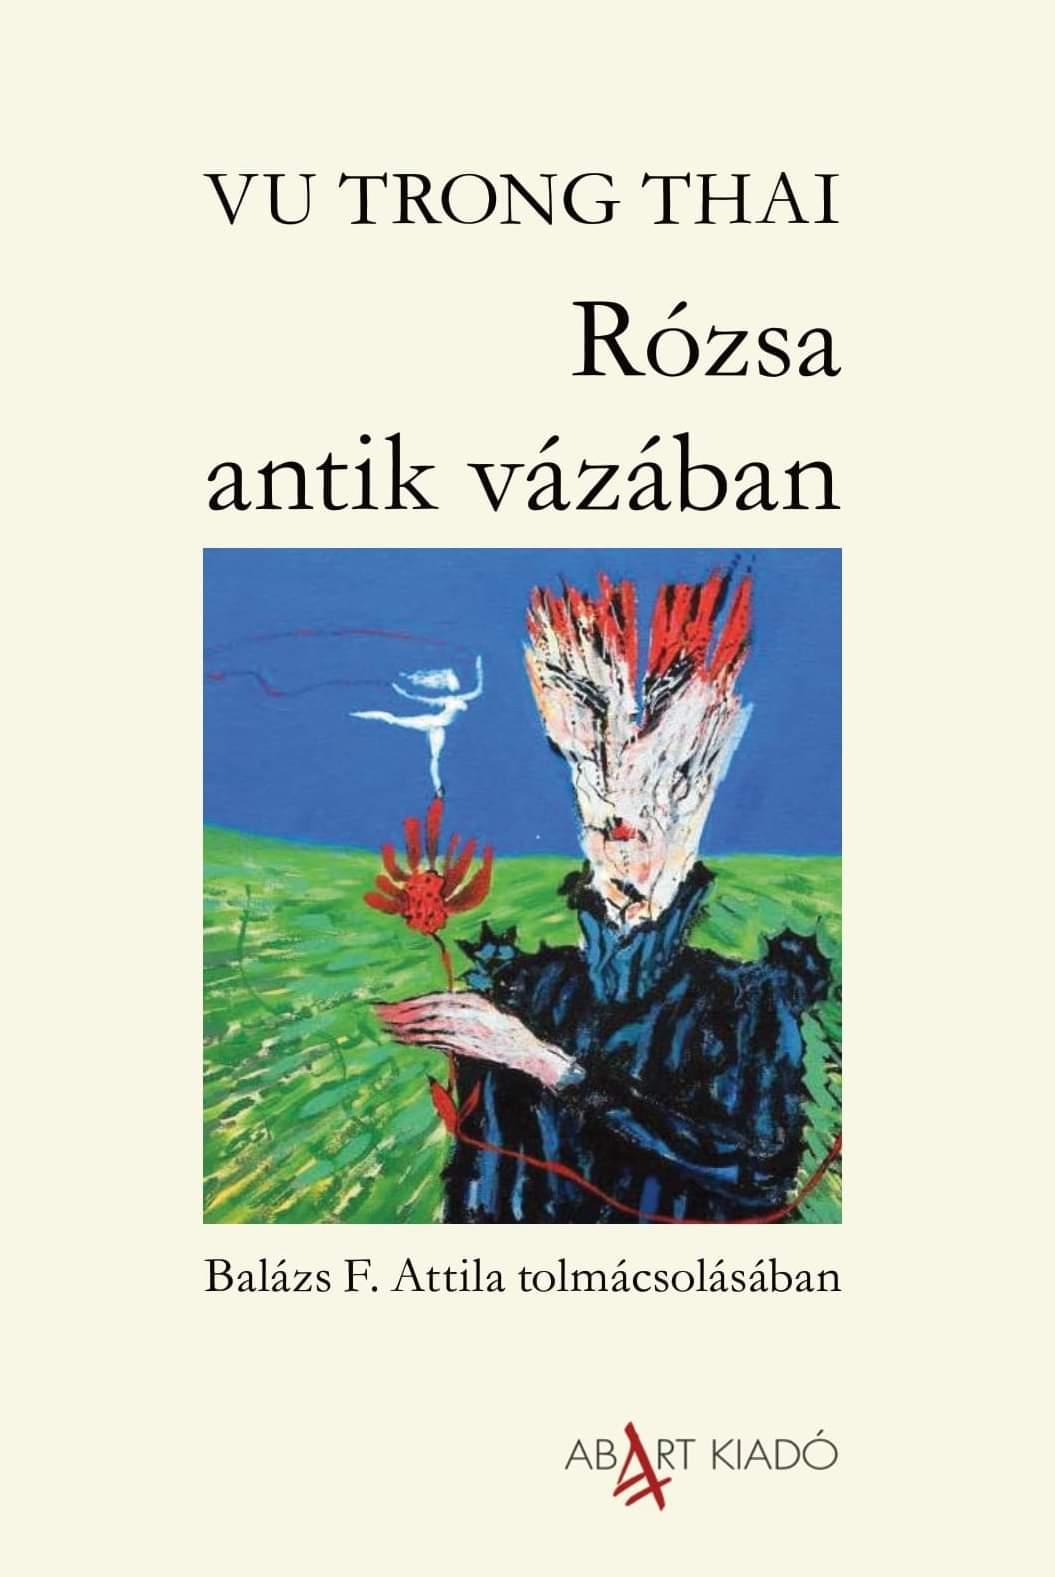 Tập thơ Việt Nam “Bông hồng và chiếc bình cổ” xuất bản tại Hungary